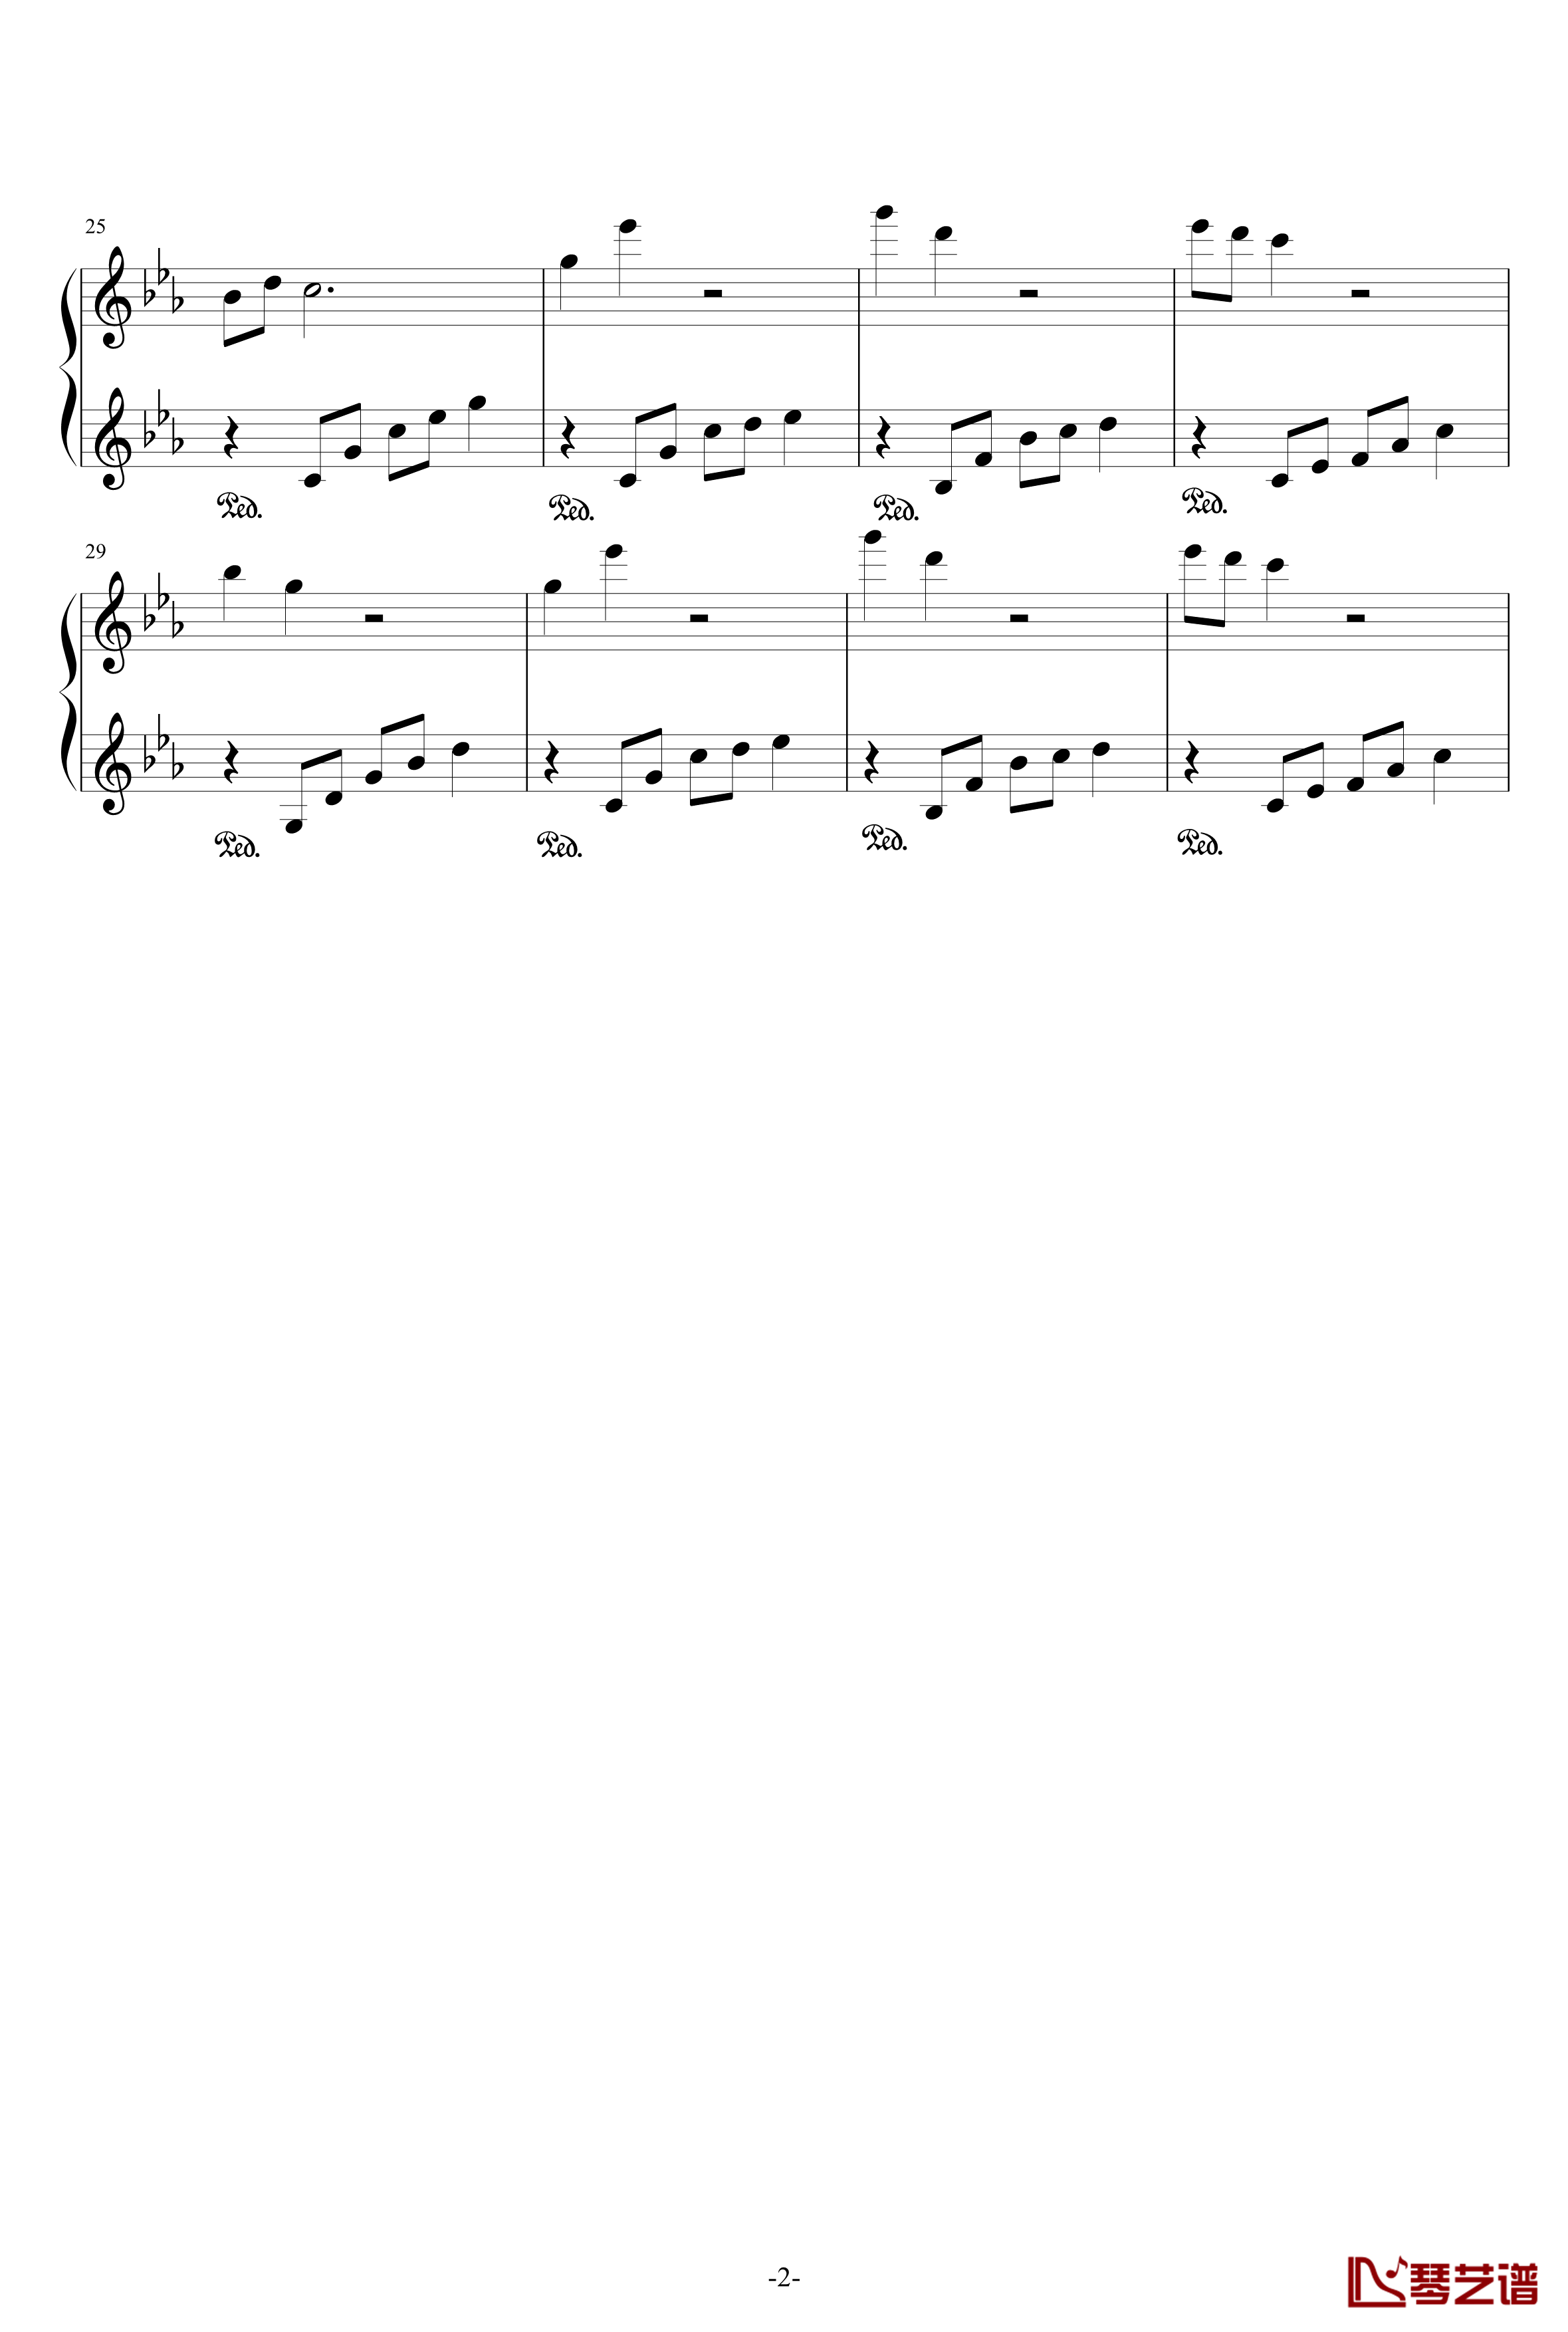 悲伤钢琴曲钢琴谱-1-李羽2